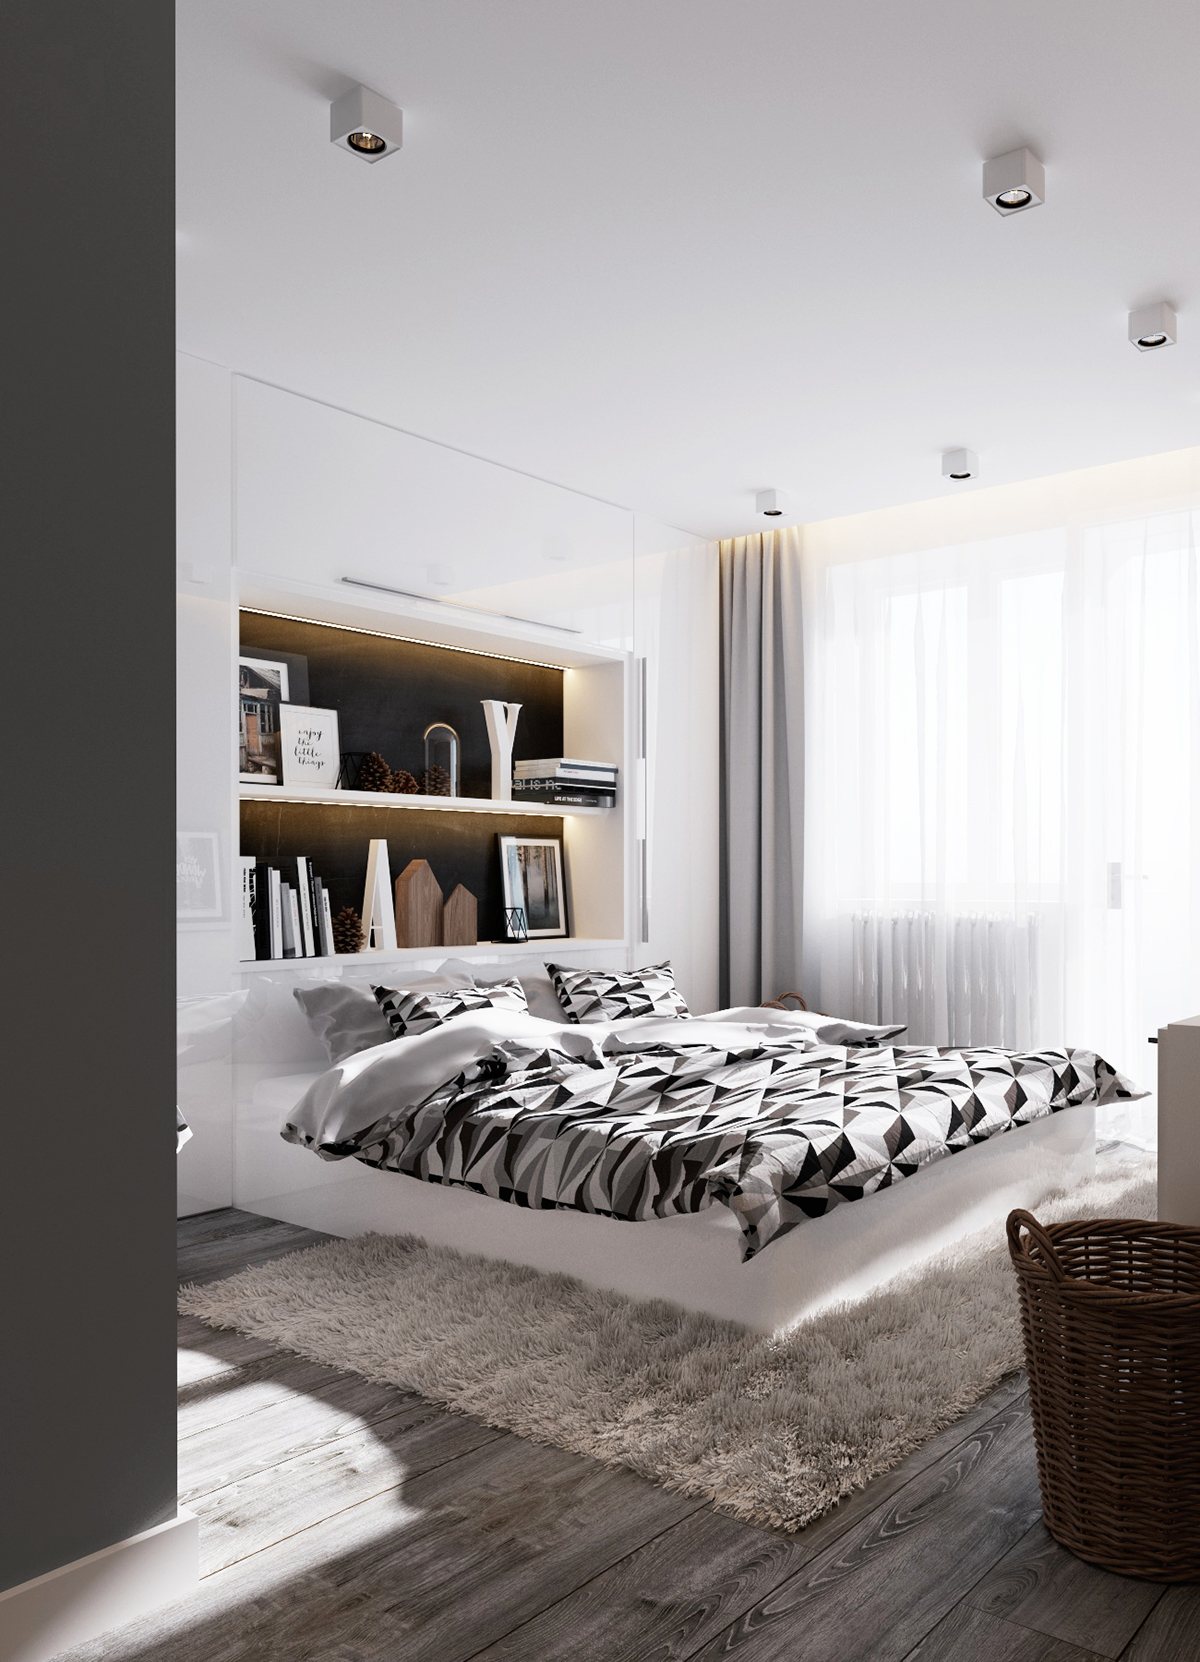 wedo thiết kế nội thất hiện đai, sang trọng mà đơn giản cho phòng ngủ